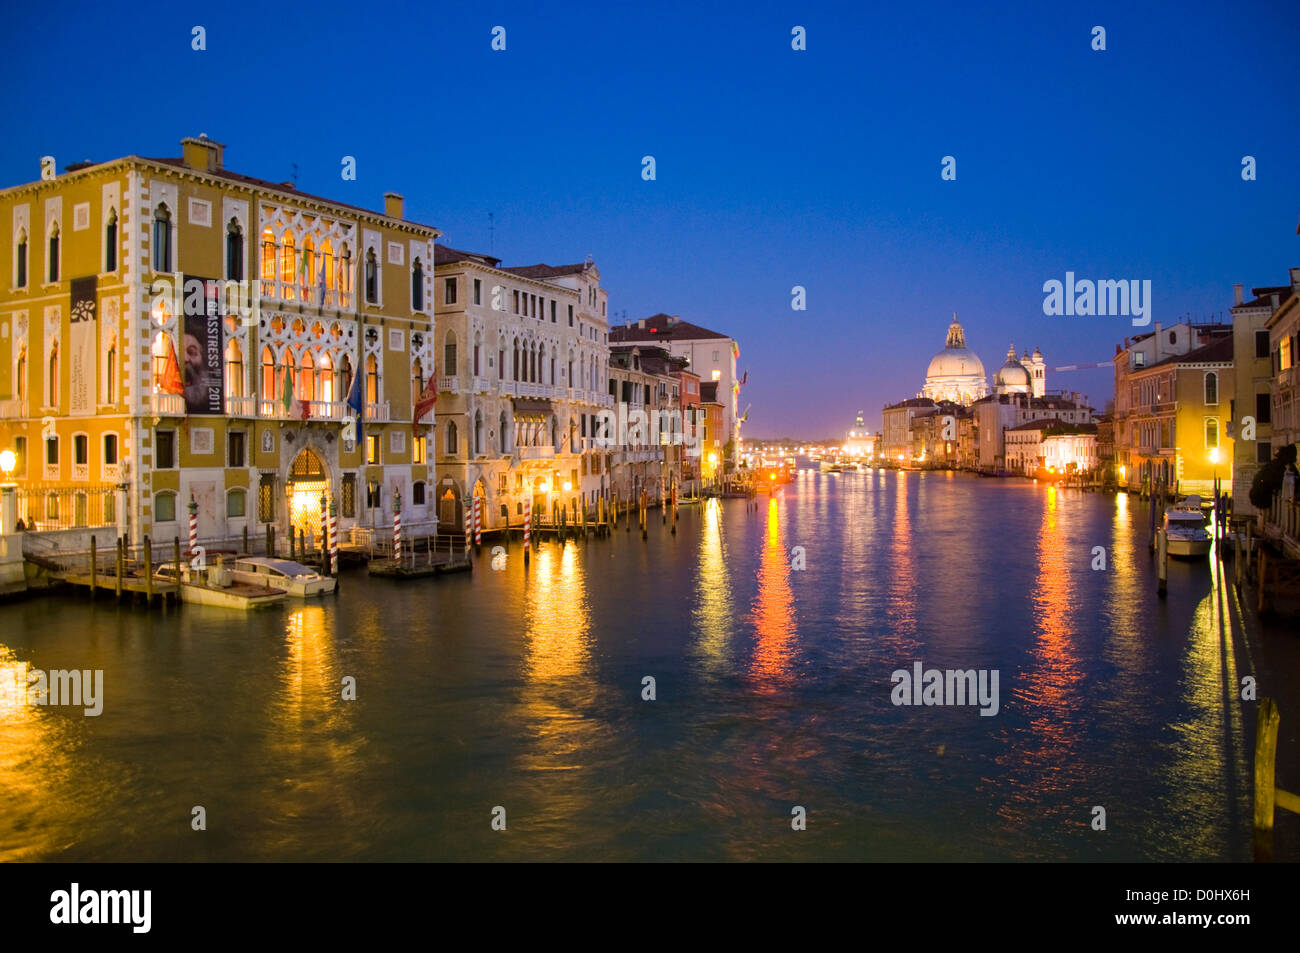 Venezia di notte con il Palazzo Cavalli Franchetti sulla sinistra sul Canal Grande Foto Stock